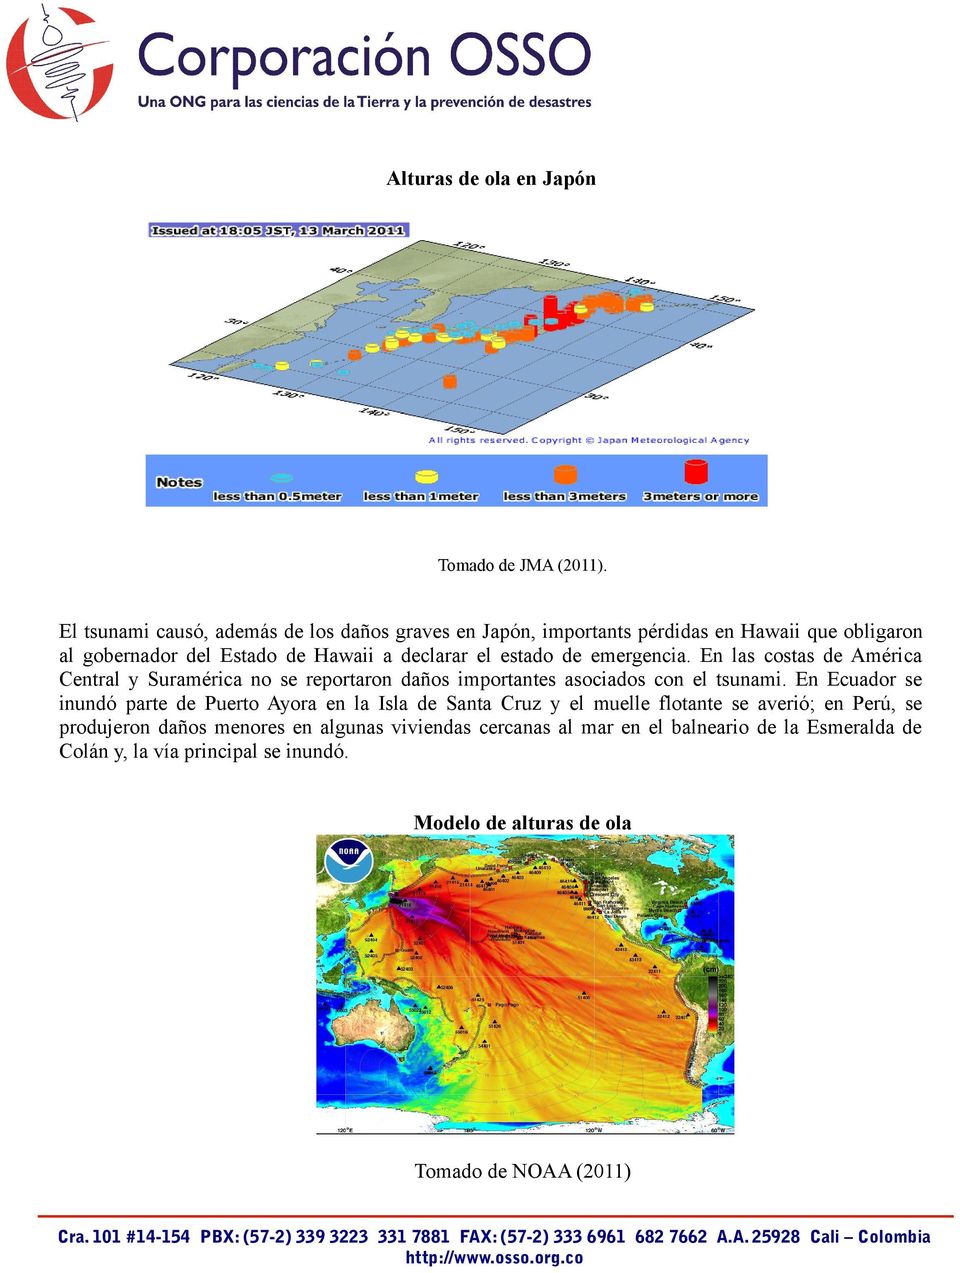 estado de emergencia. En las costas de América Central y Suramérica no se reportaron daños importantes asociados con el tsunami.